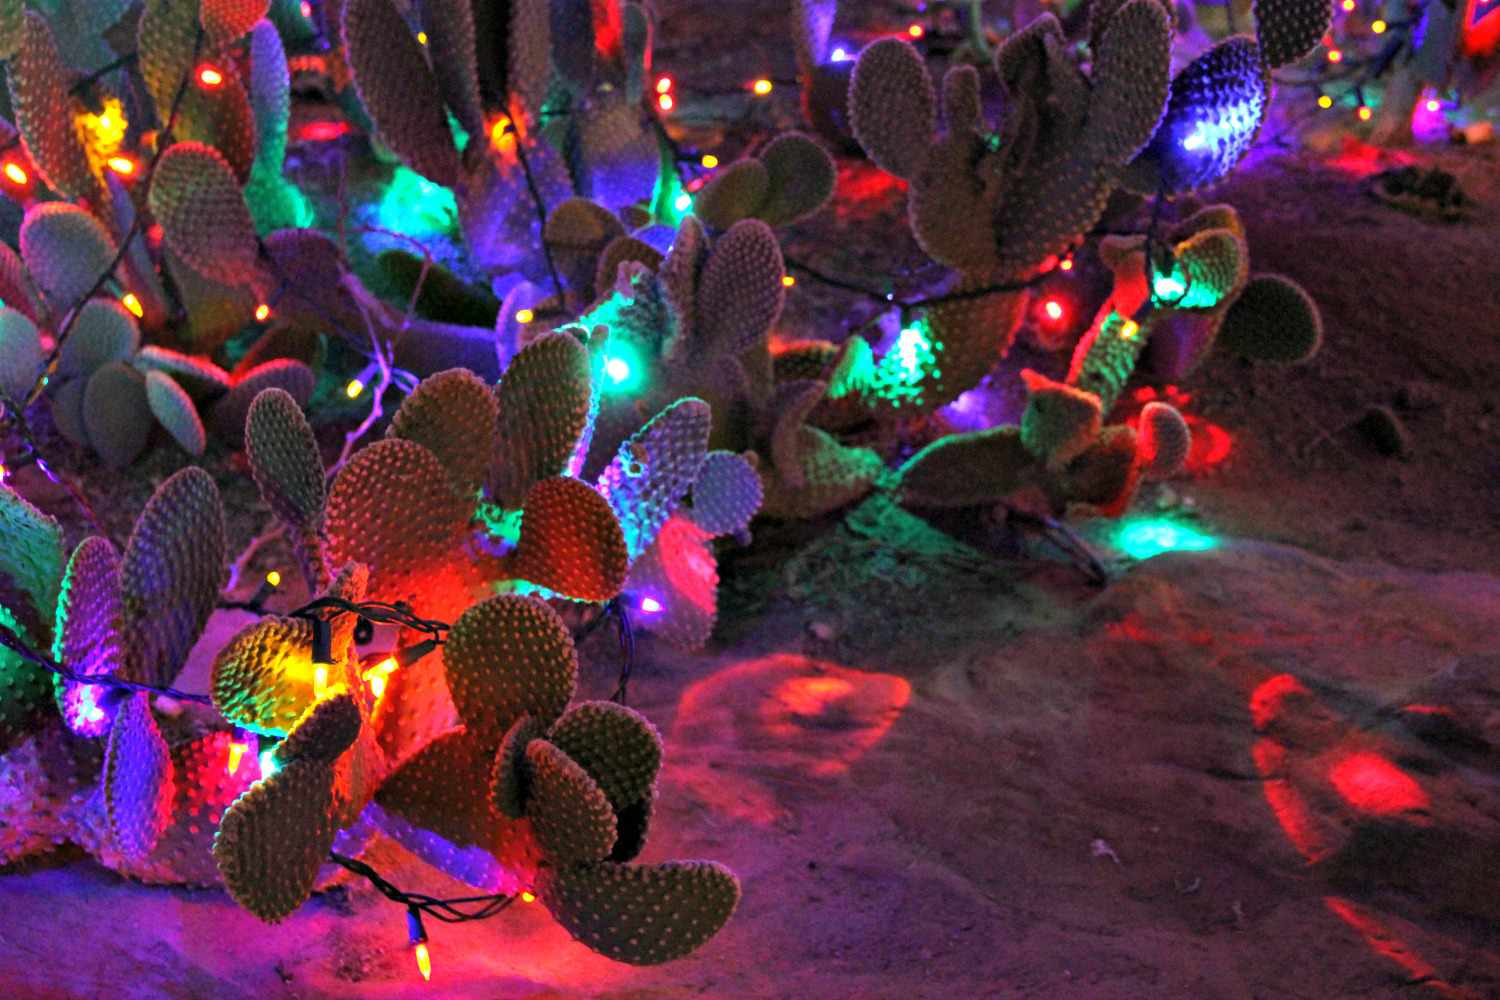 Plantas de cactos com pás decoradas com bulbos multicoloridos